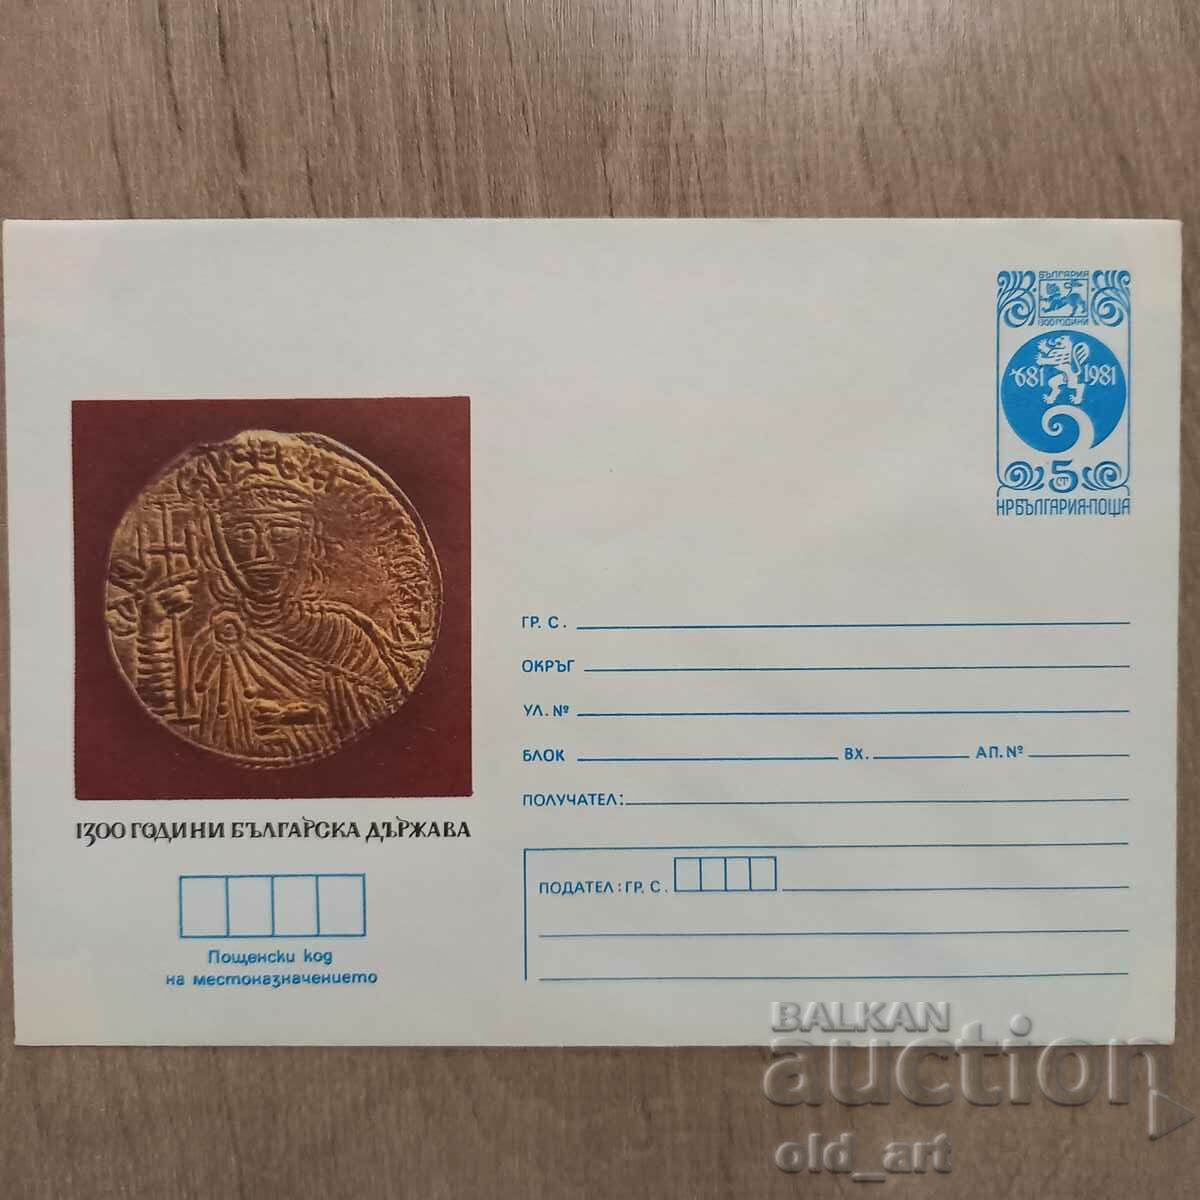 Ταχυδρομικός φάκελος - 1300. Βουλγαρικό κράτος